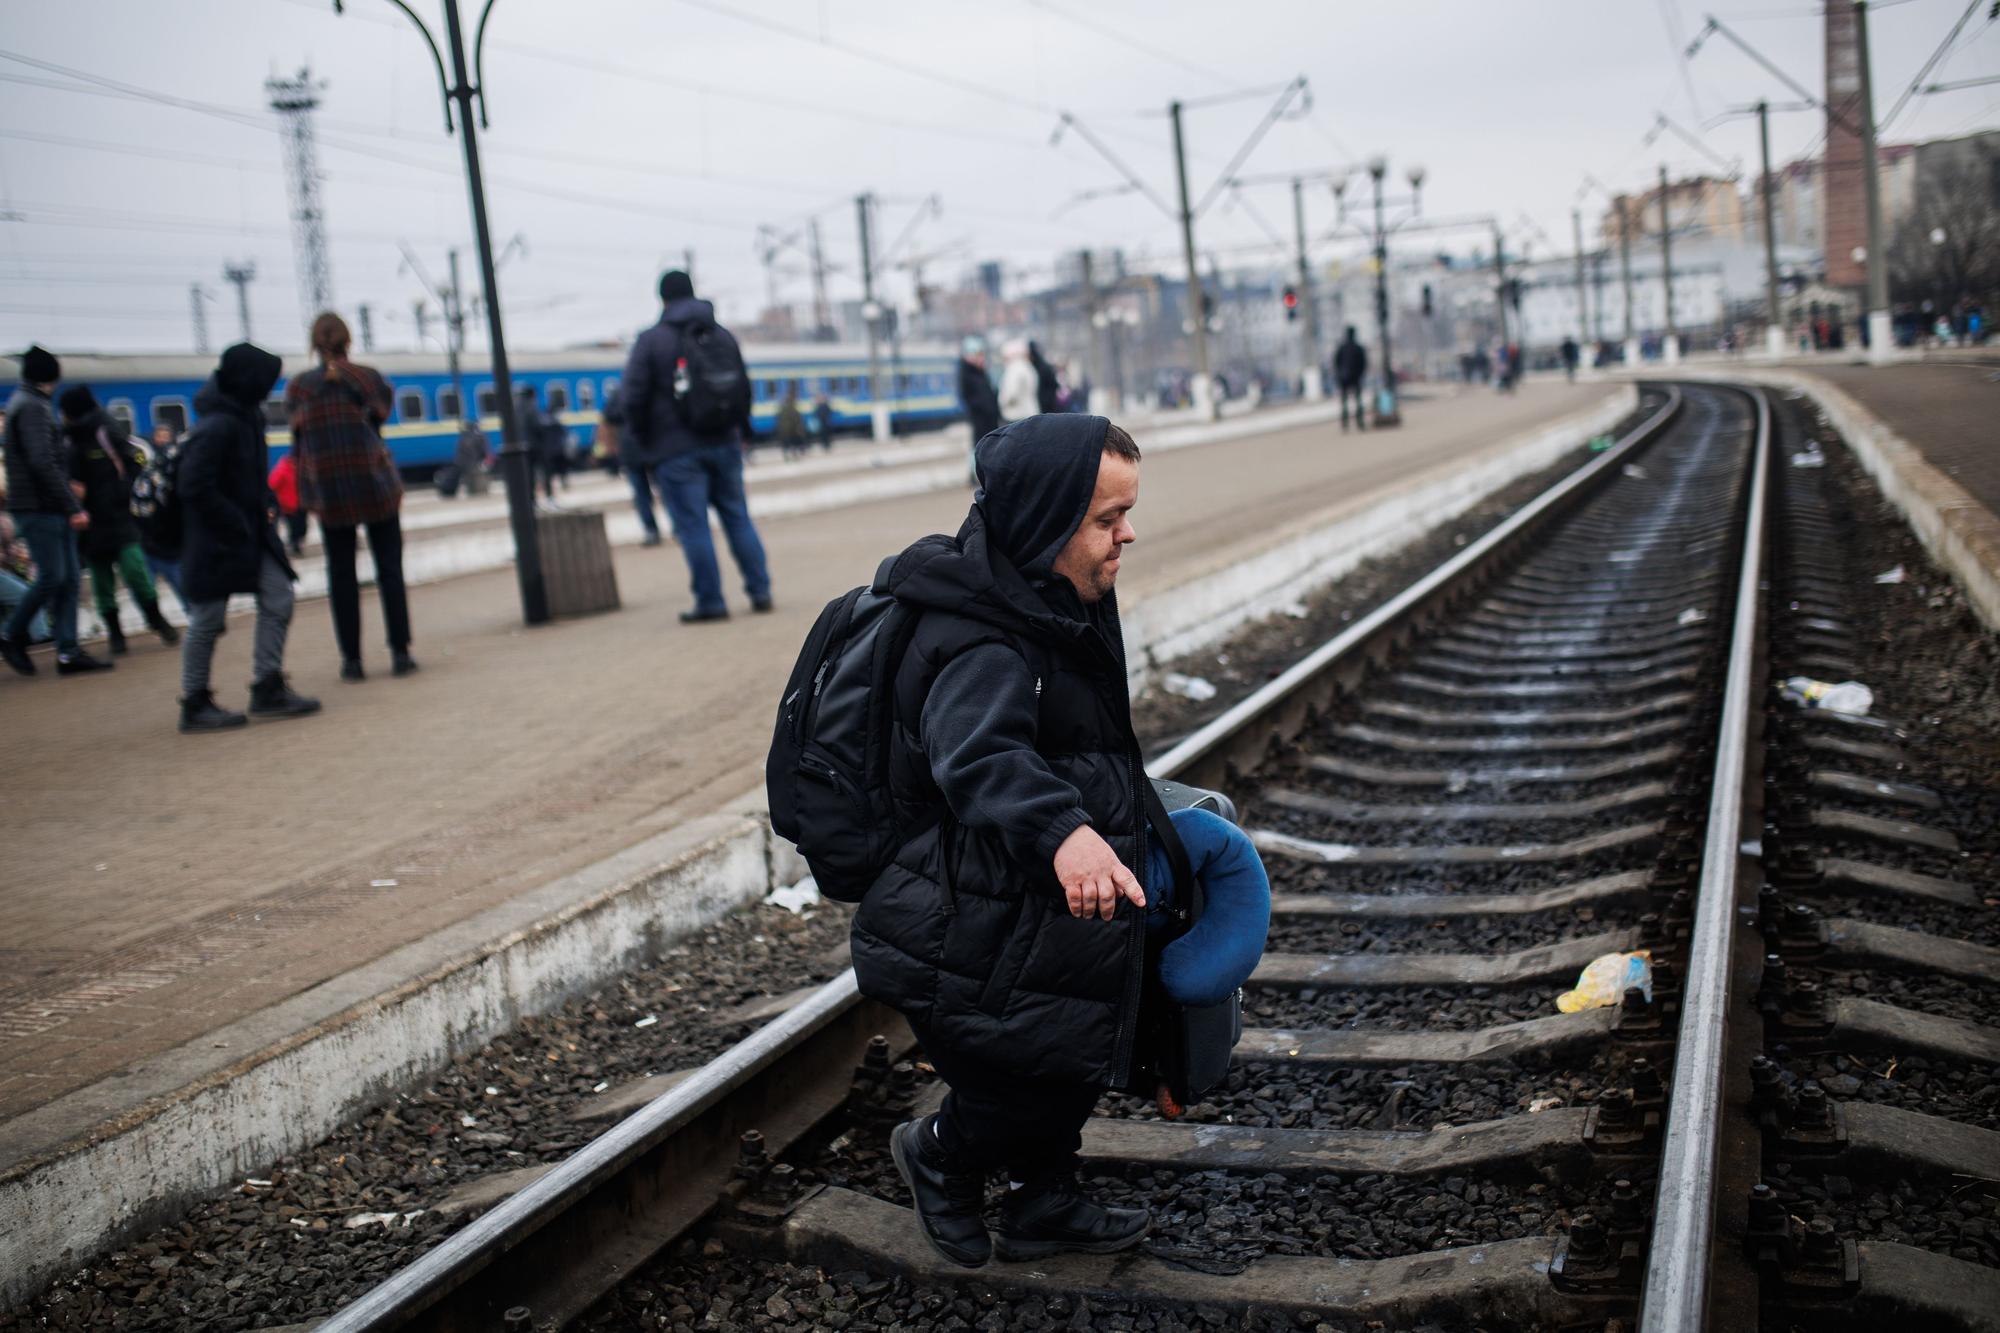 Guerra en Ucrania | El andén número 5 de la estación de Livl, la vía de escape para miles de ucranianos